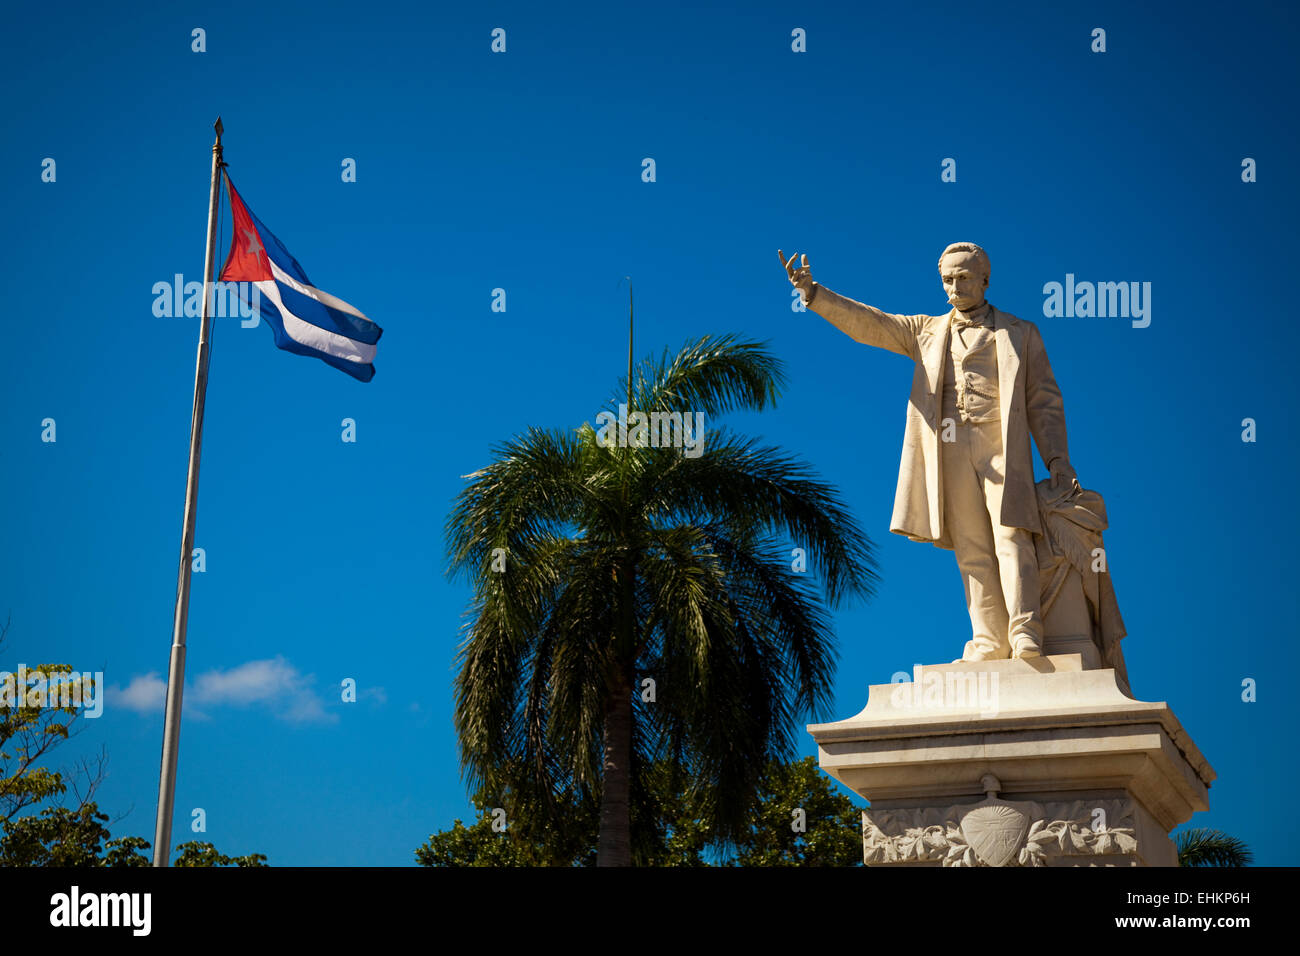 Jose Marti and Cuban flag, Cienfuegos, Cuba Stock Photo